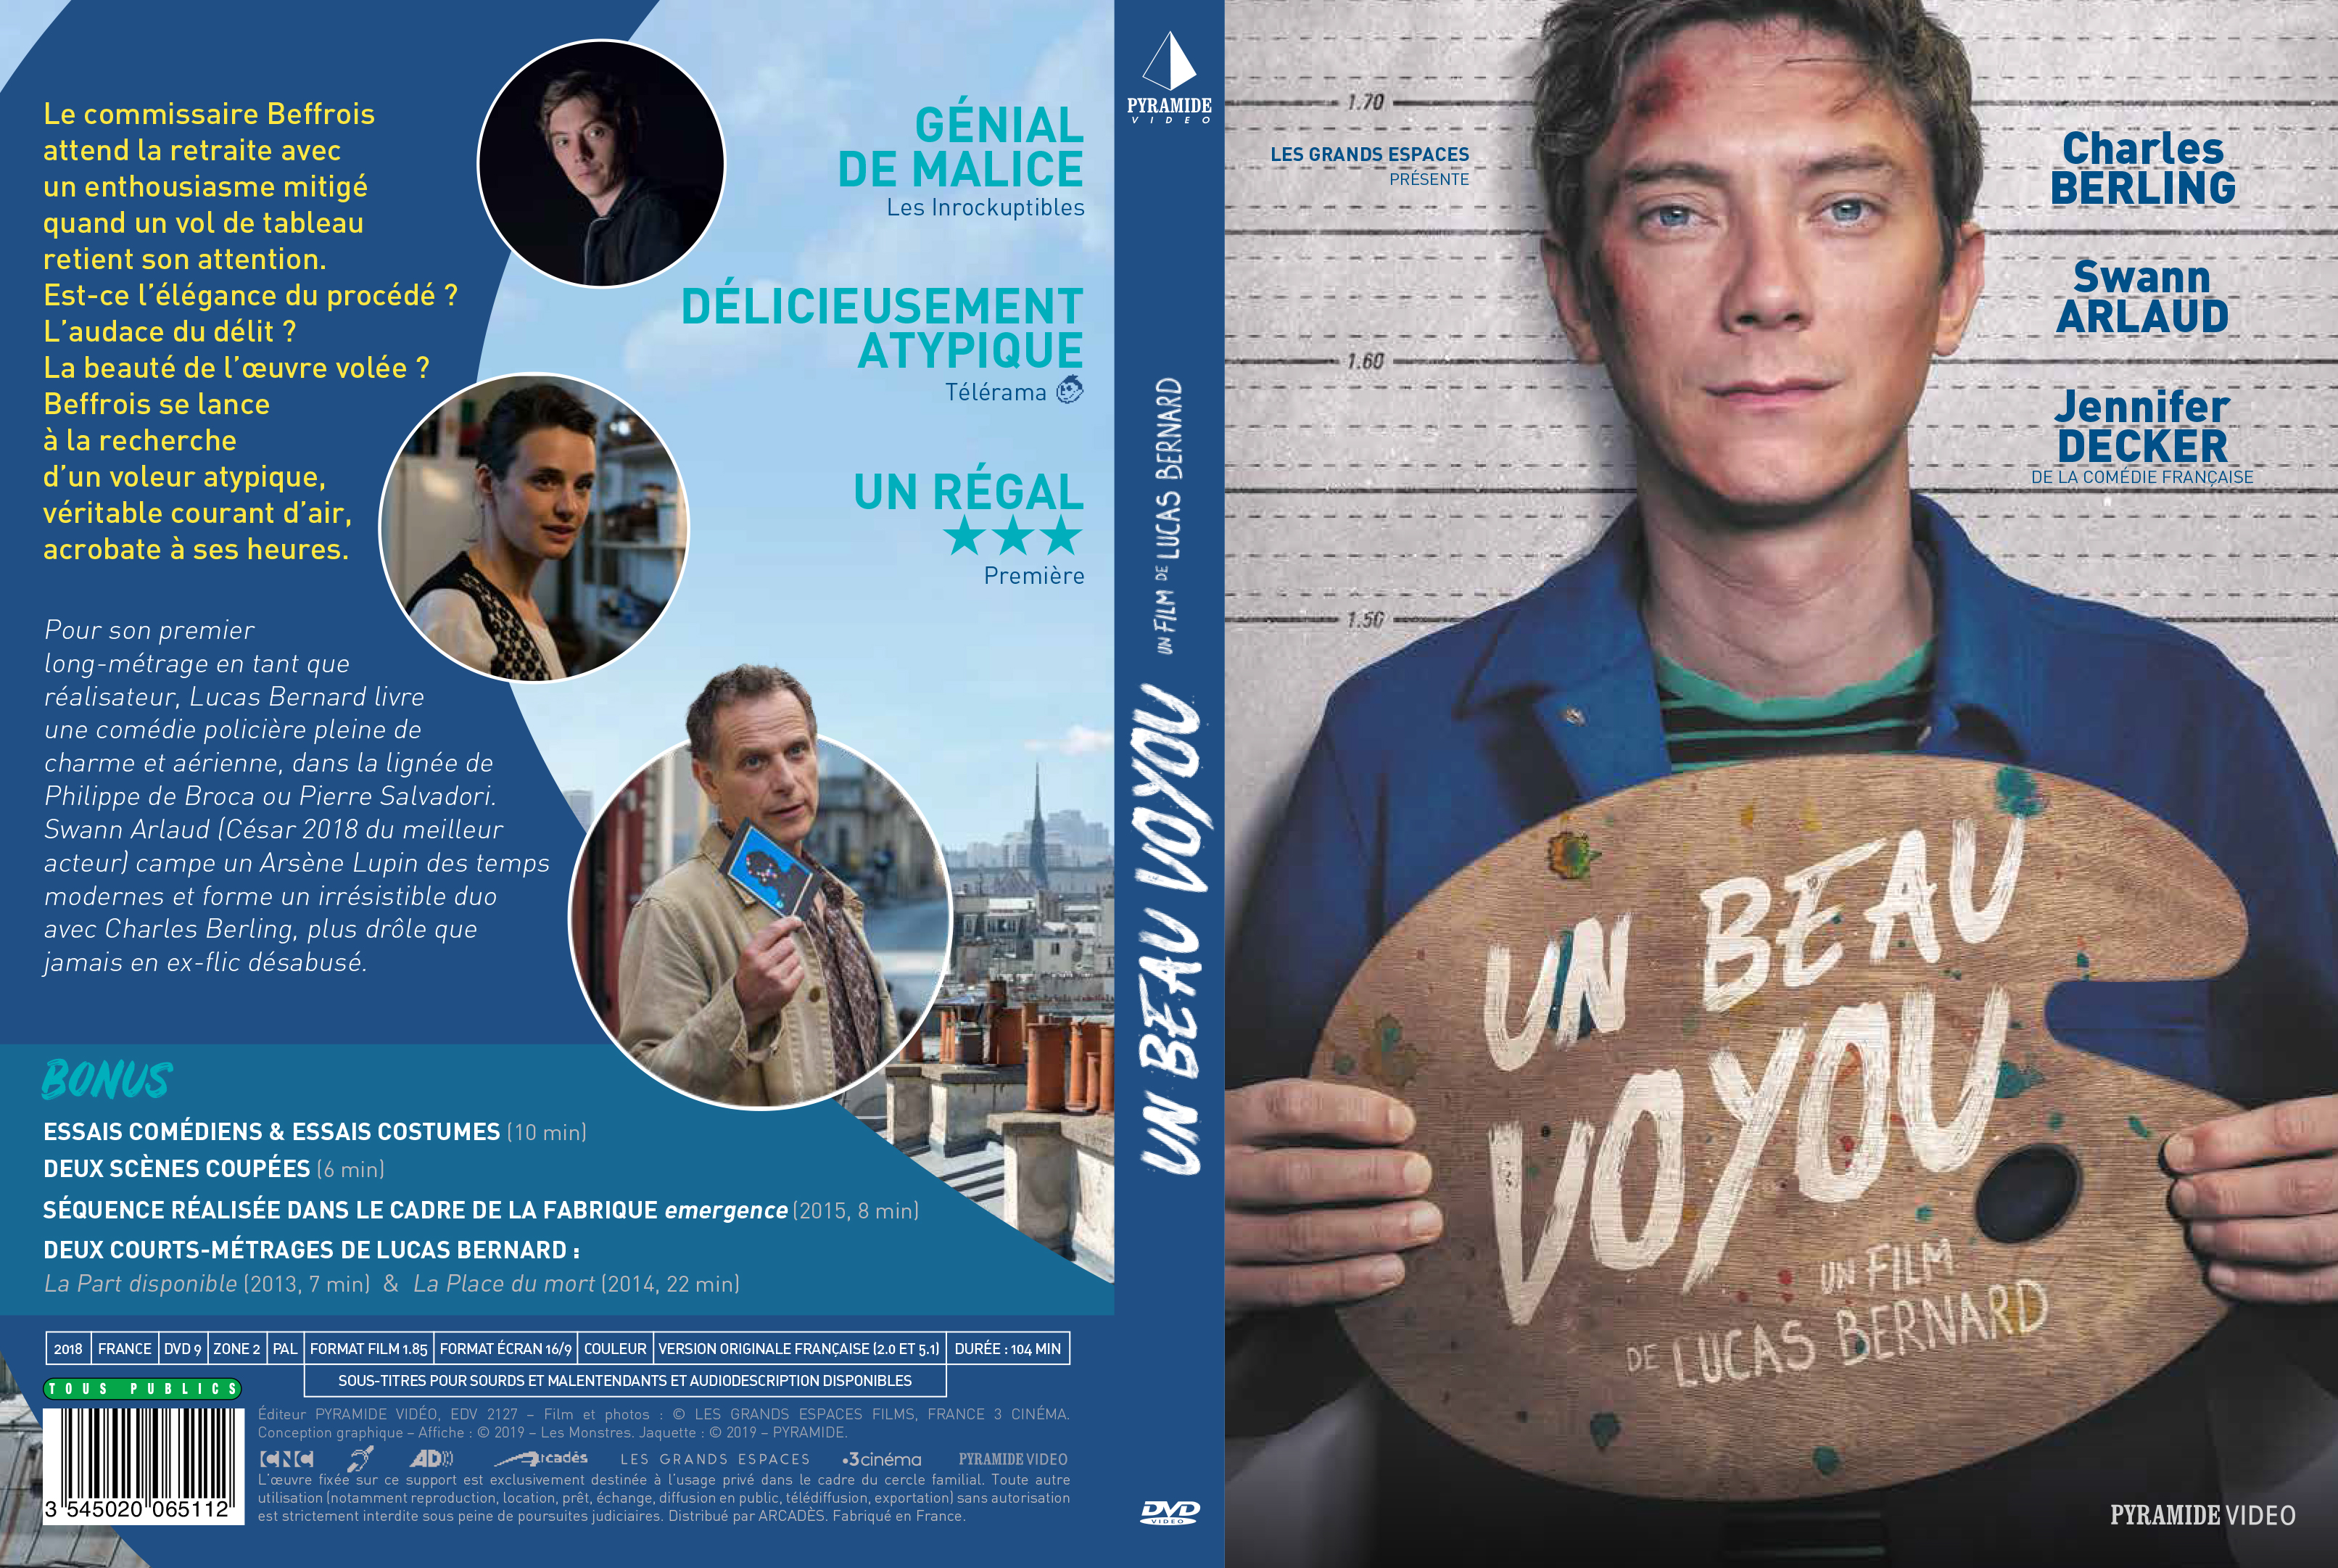 Jaquette DVD Un beau voyou